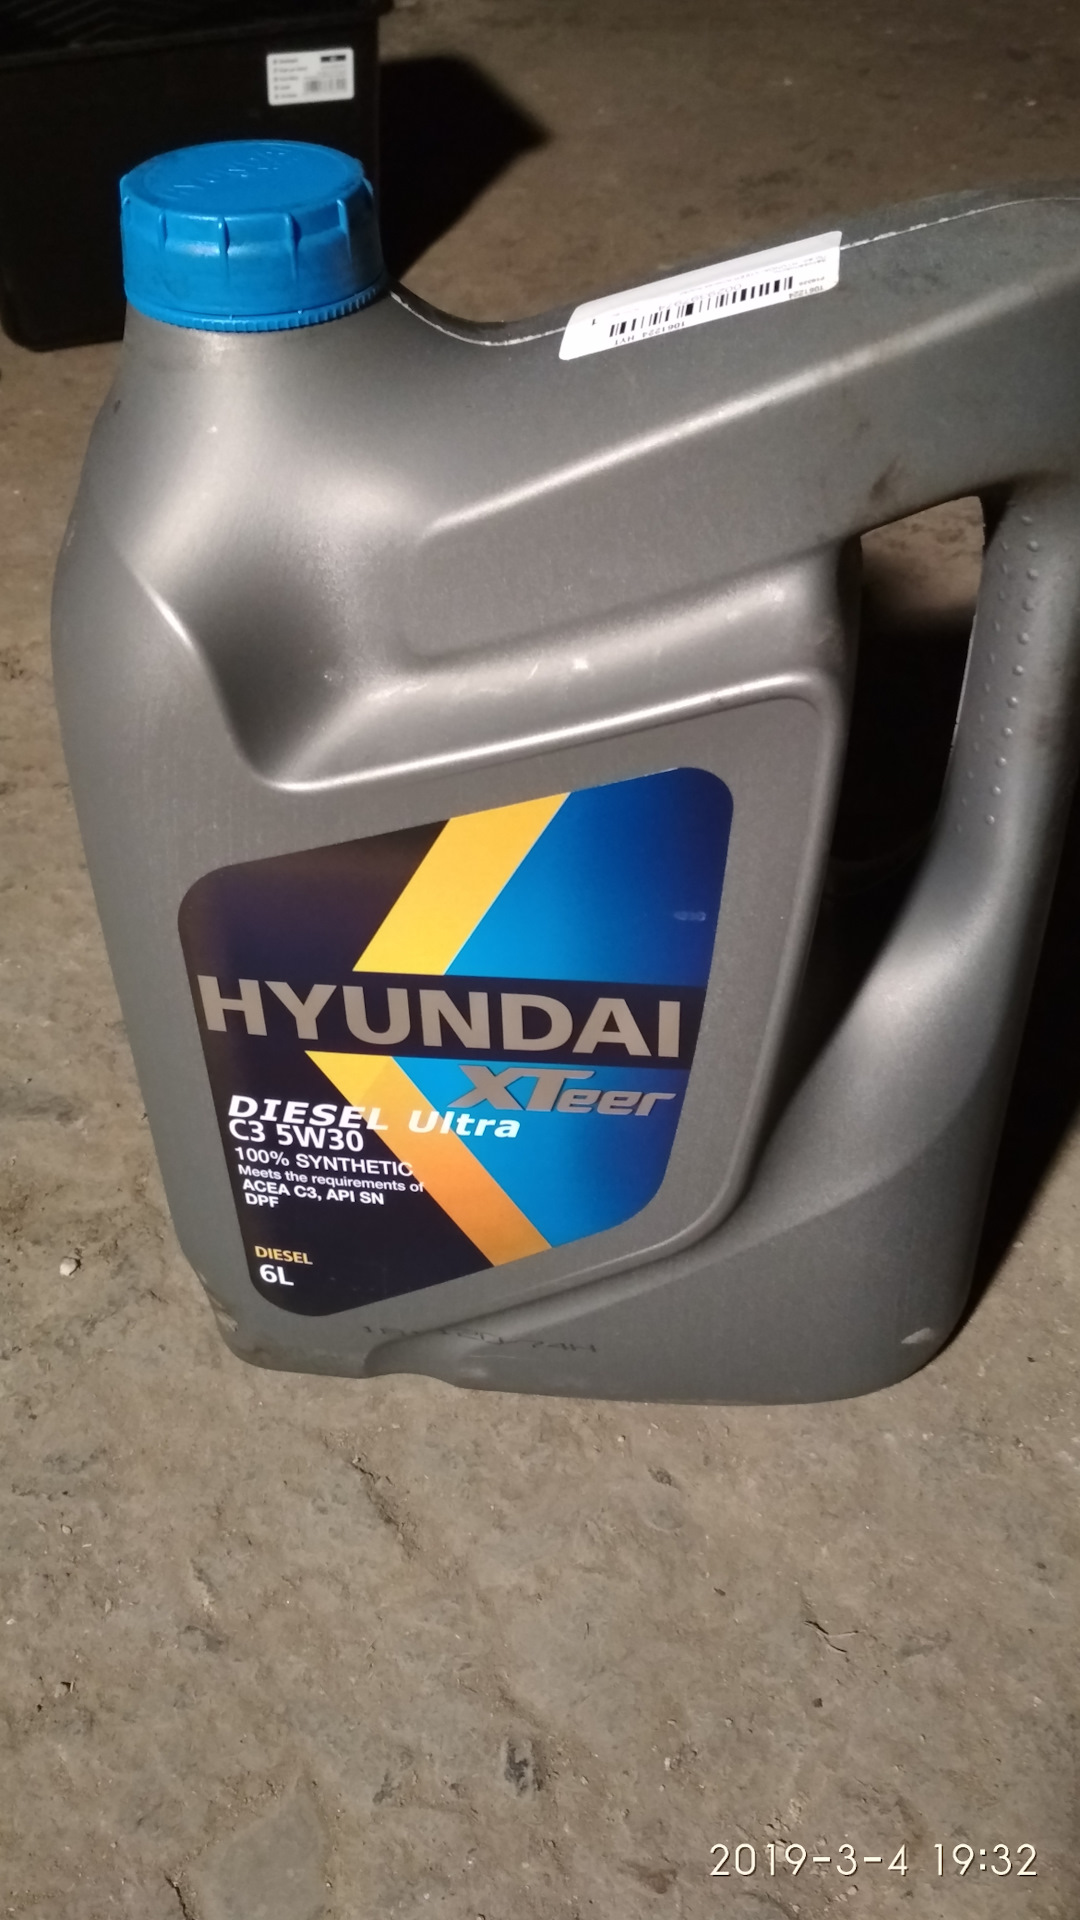 Hyundai xteer diesel ultra